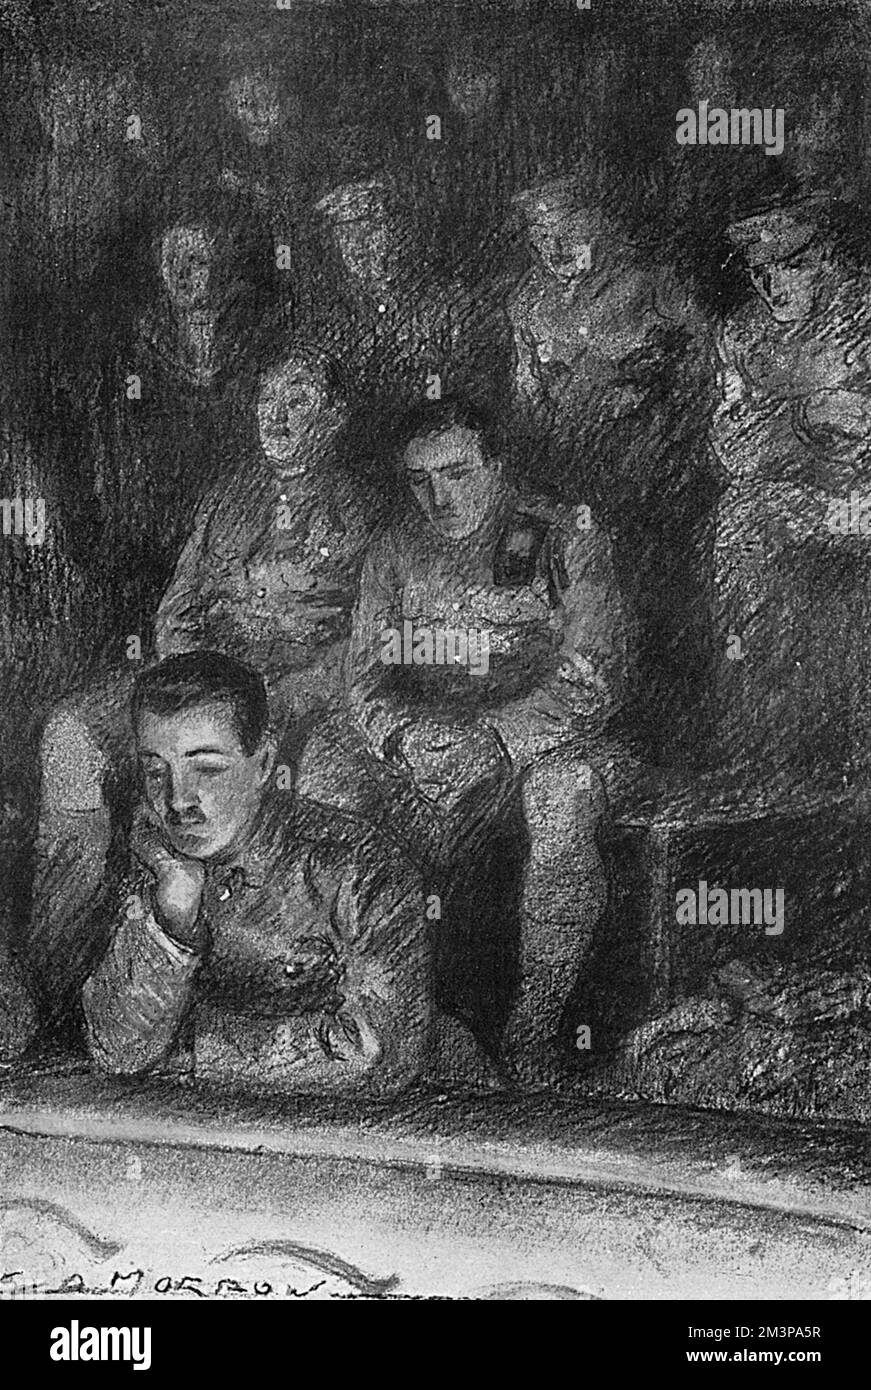 Eine Illustration des Zuschauers von Soldaten, die die Oper von einem hohen Aussichtspunkt aus betrachten, alle in voller Militäruniform und mit einem traurigen Ausdruck. Datum: 1916 Stockfoto